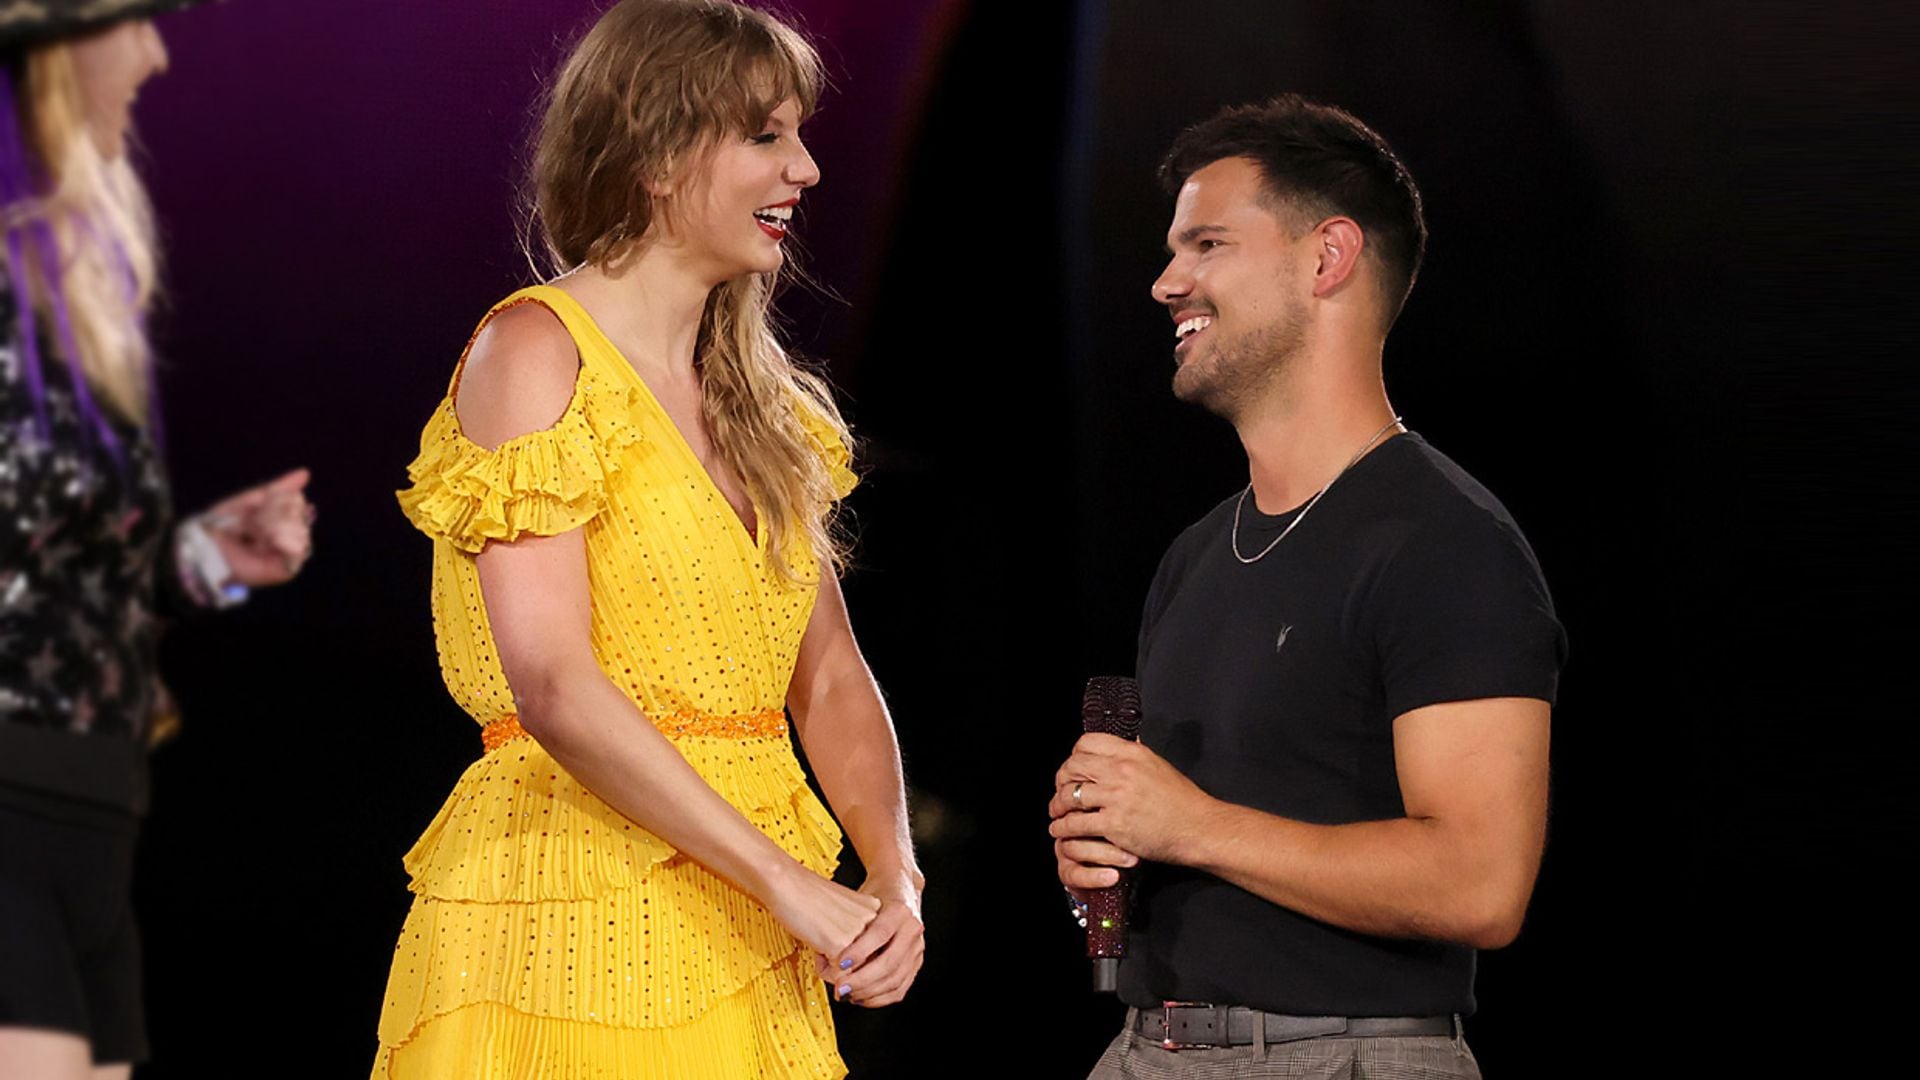 Taylor Swift y Taylor Lautner recrean su abrazo en el escenario 14 años después y sus fans enloquecen